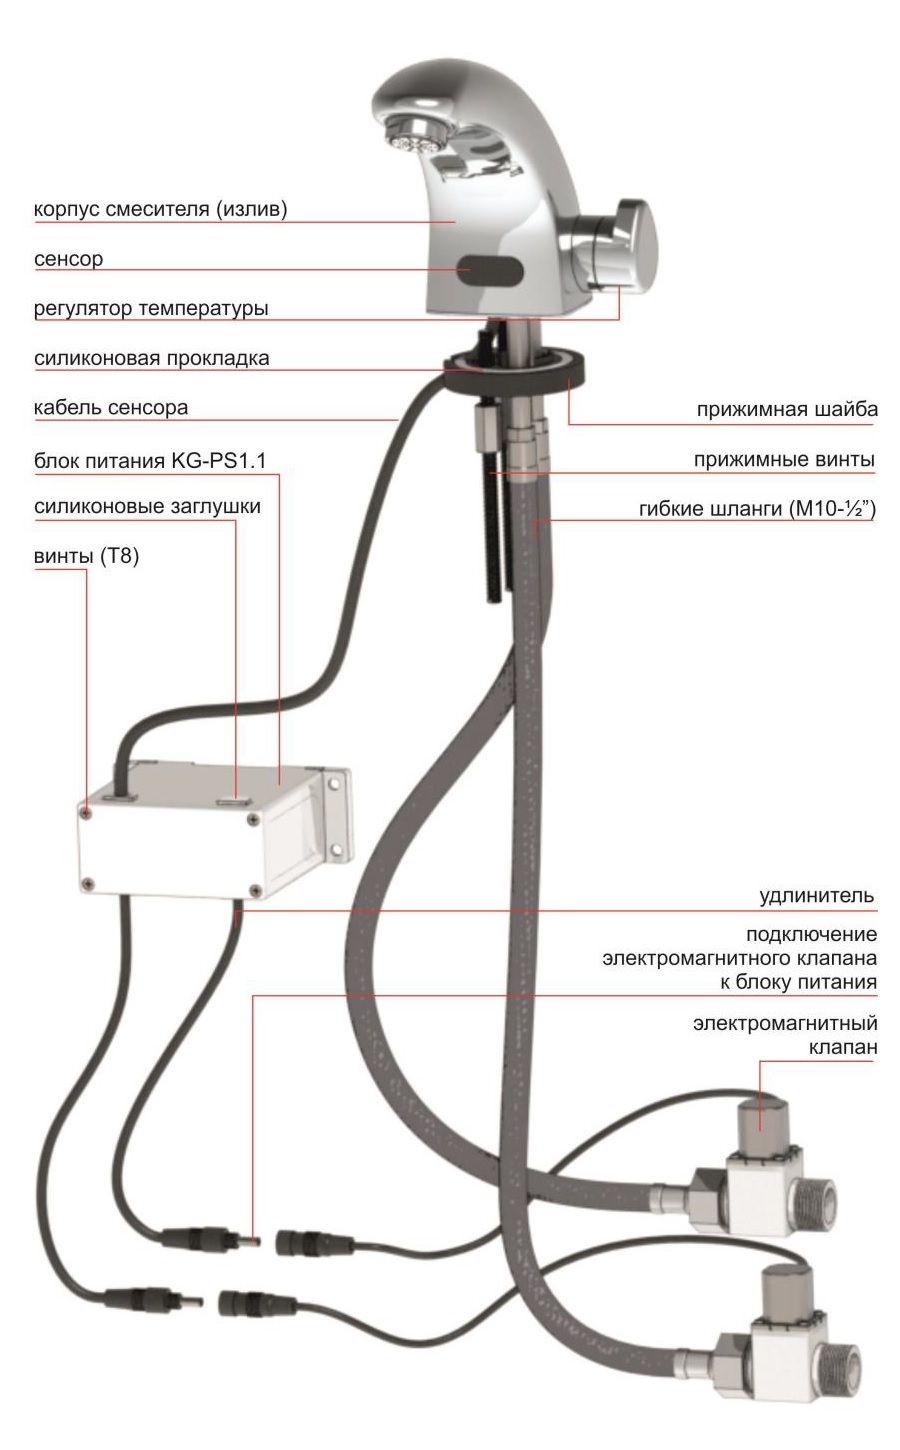 Automatic sensor faucet KR5143CV-DC